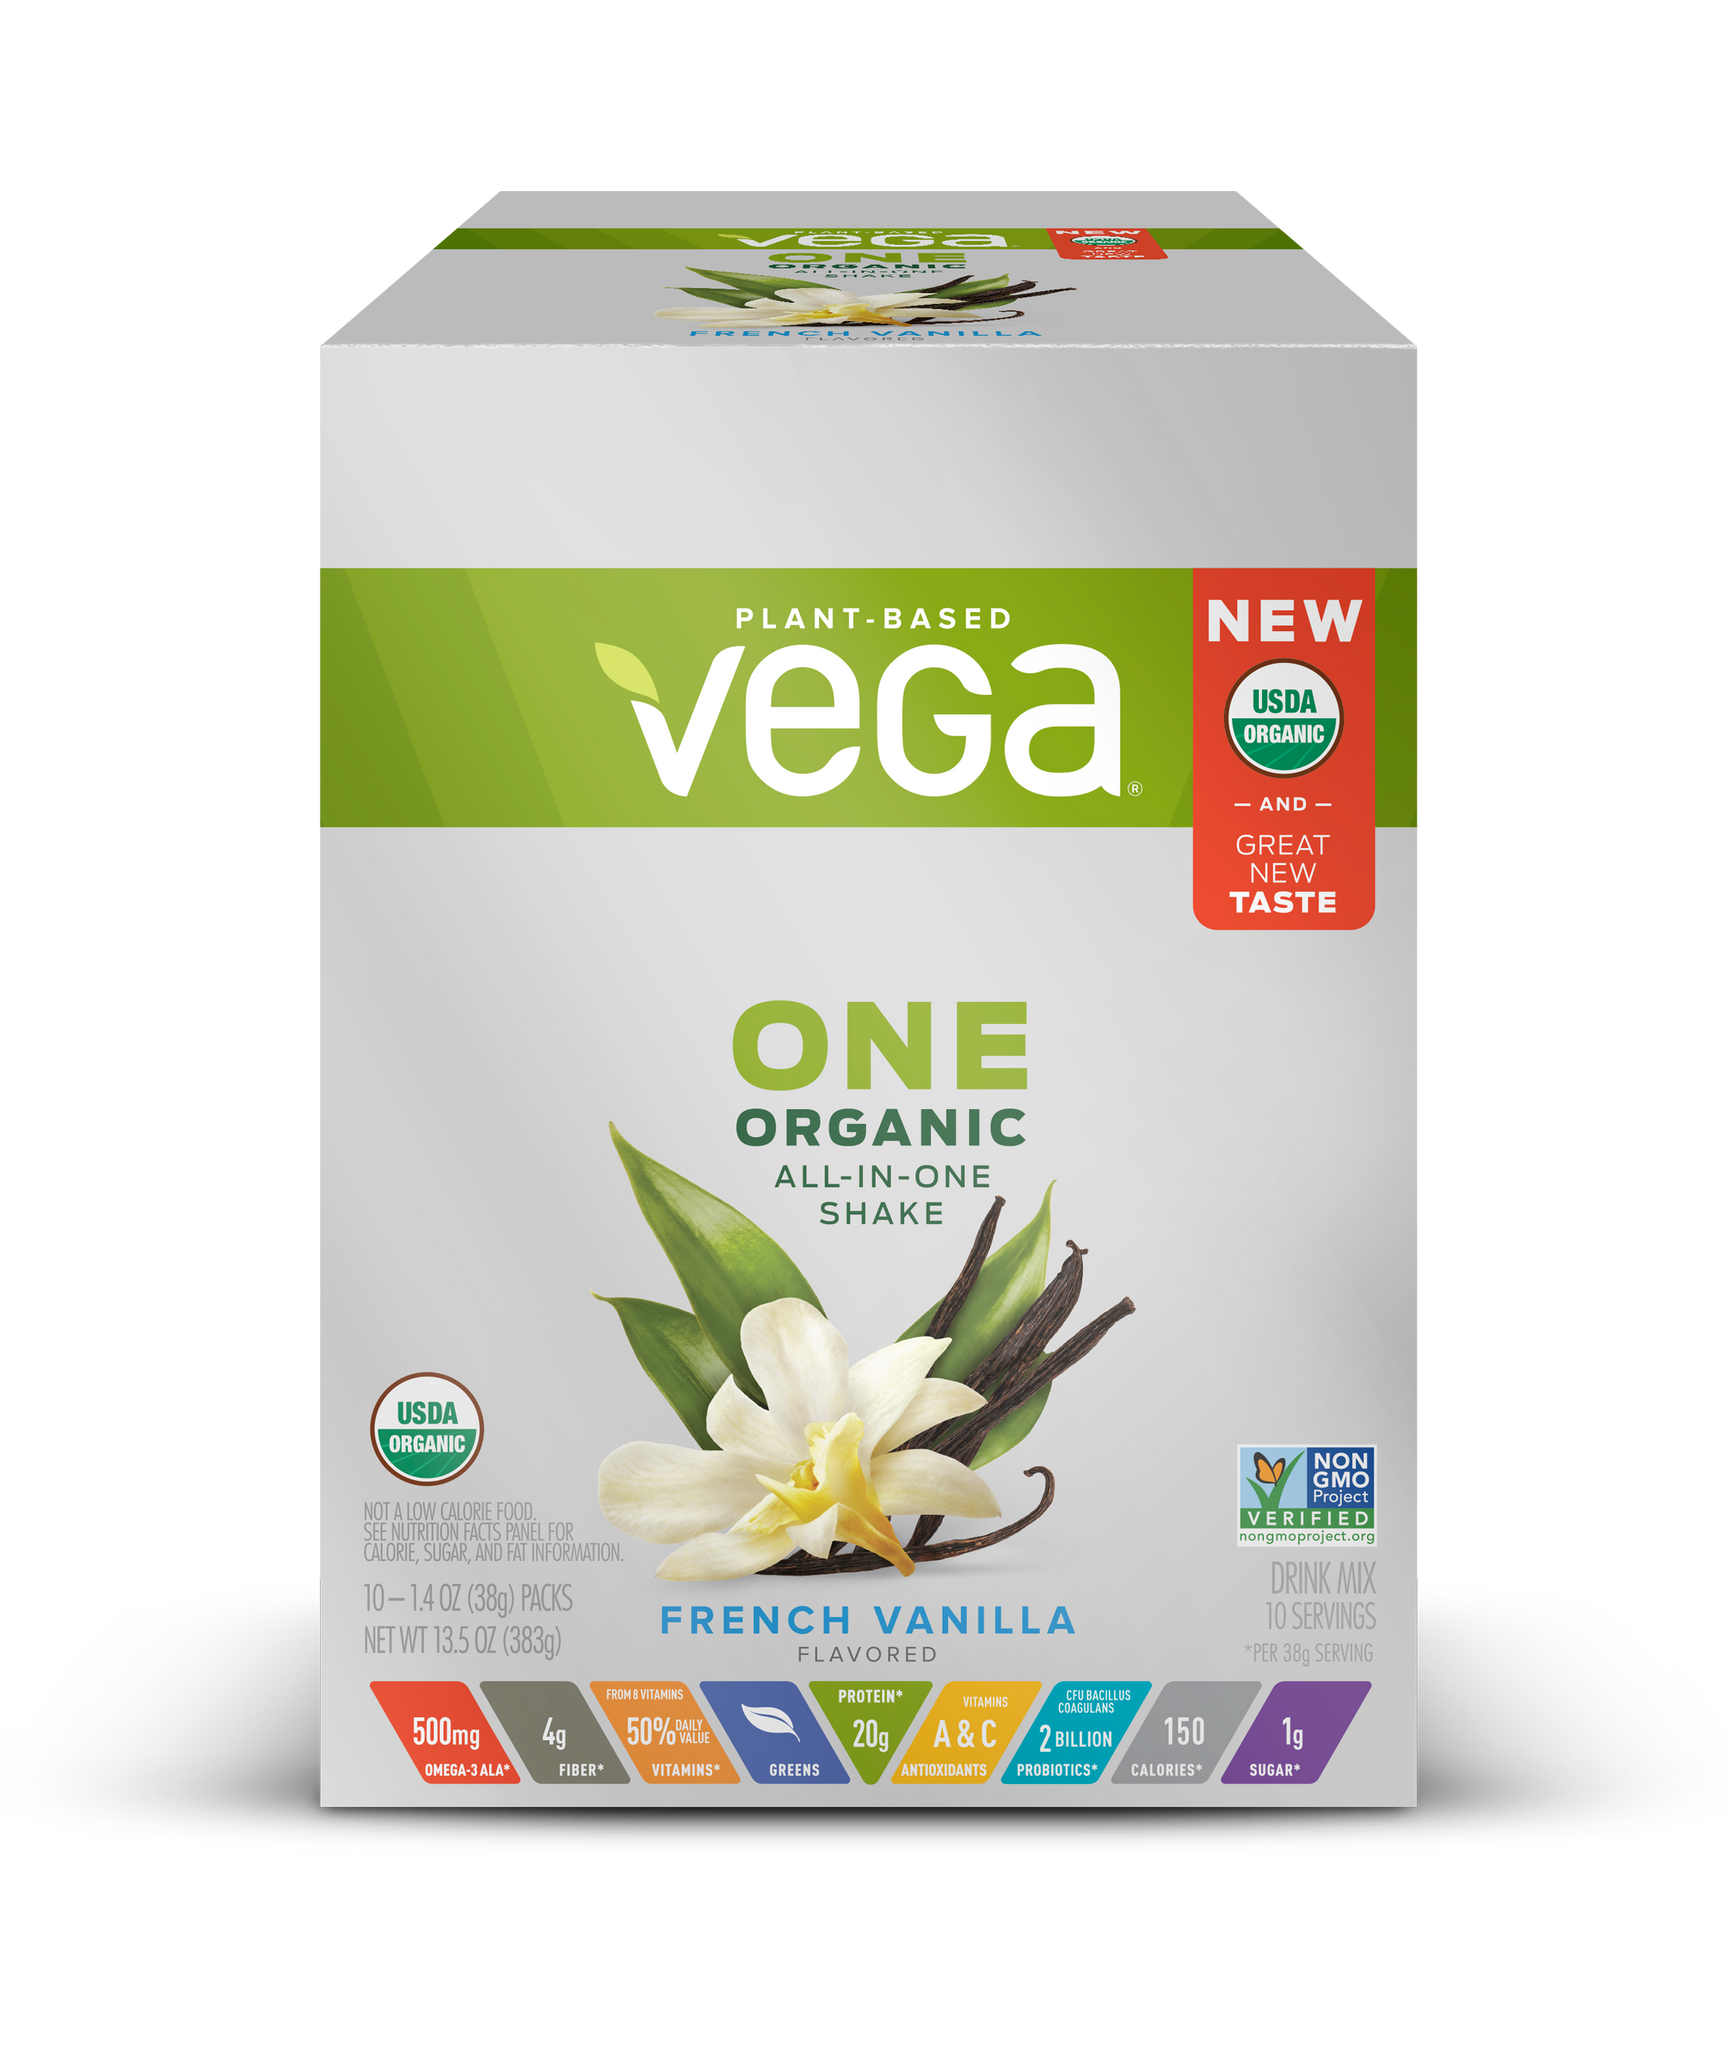 Vega One® Organic All-in-One Shake - Plant-Based